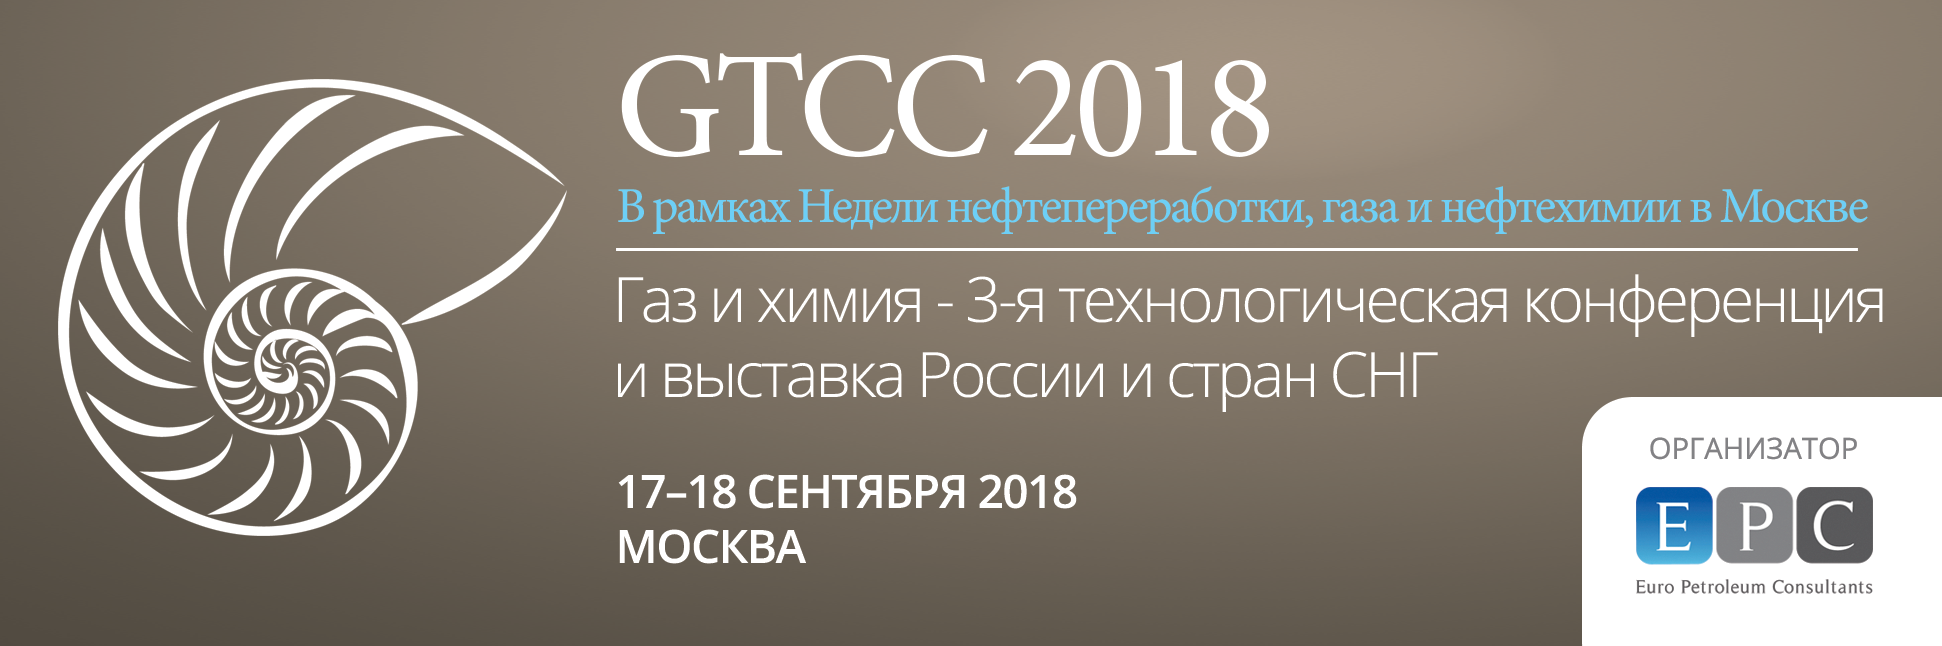 GTCC 2018